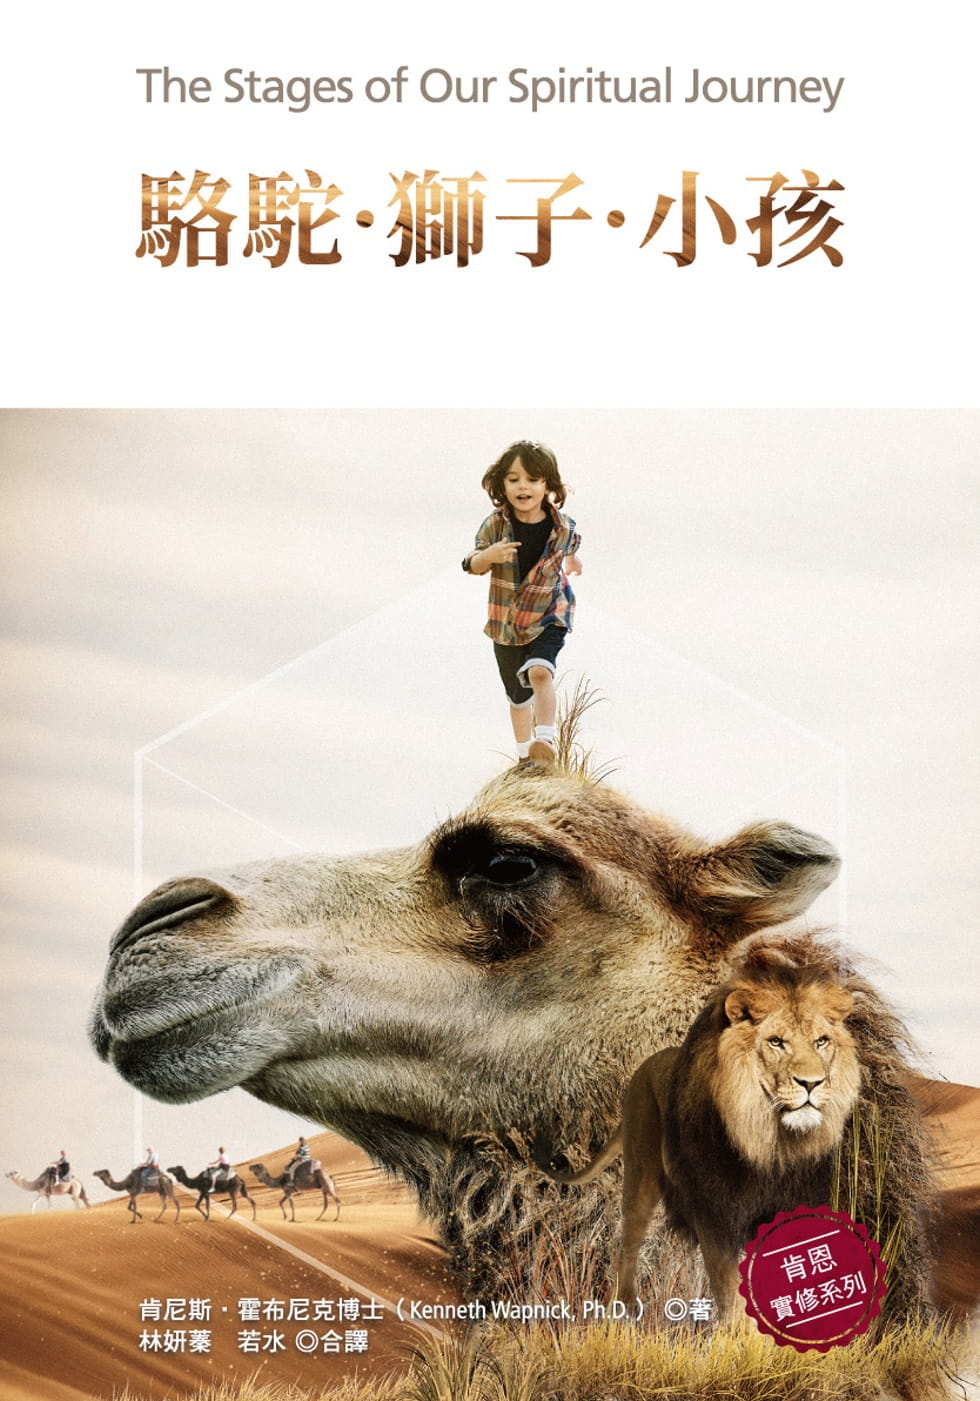 駱駝．獅子．小孩